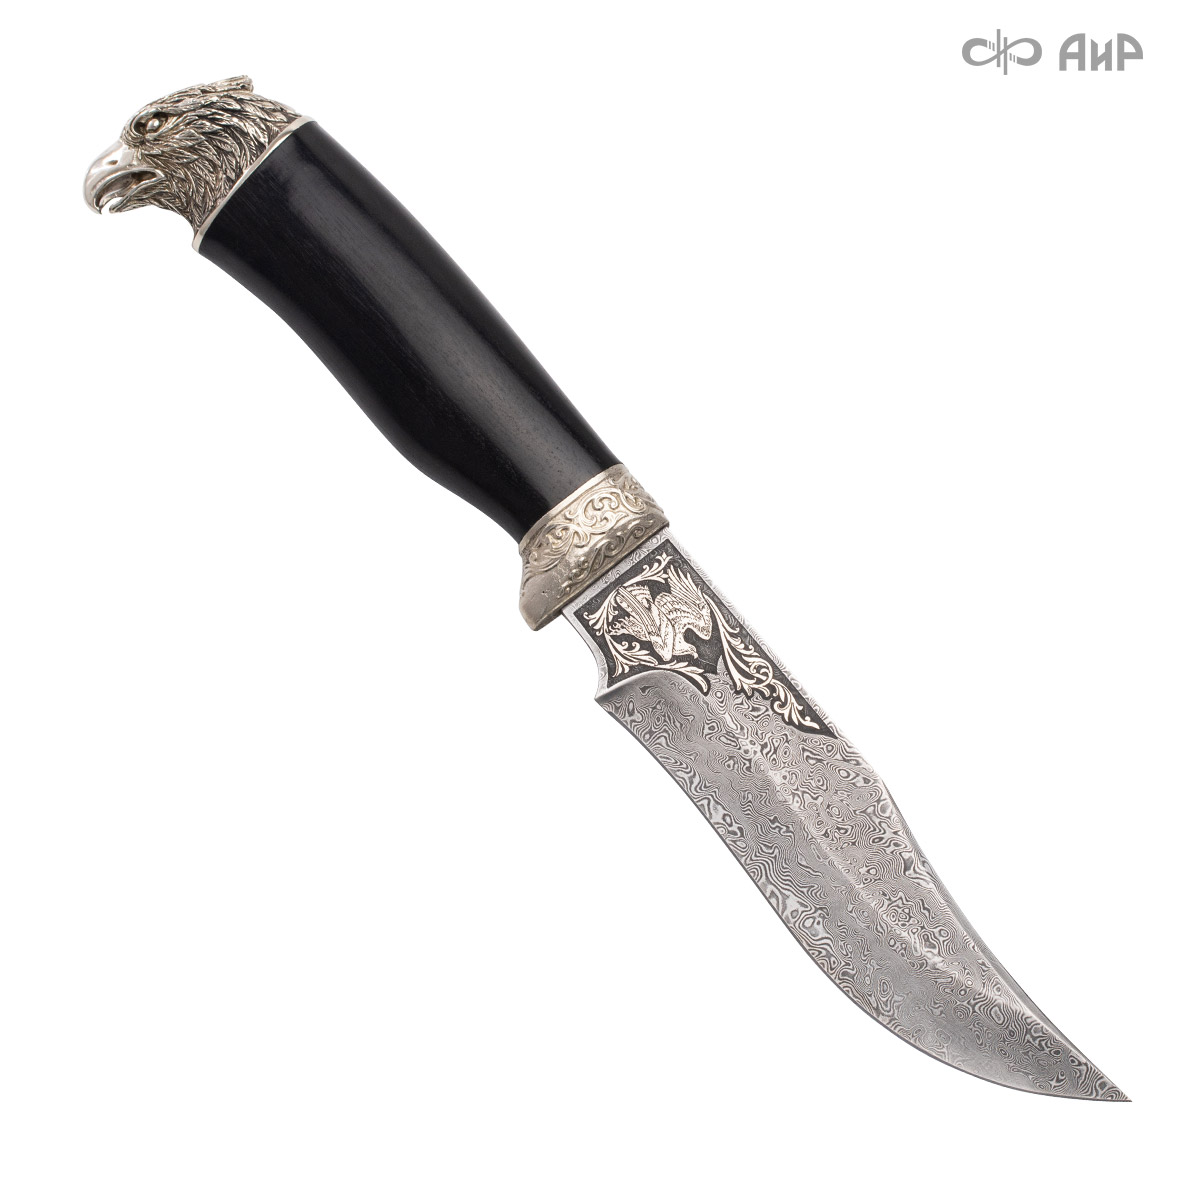  Нож Клычок-1 с сюжетом Орел на охоте, Артикул: 38258 - Компания «АиР»